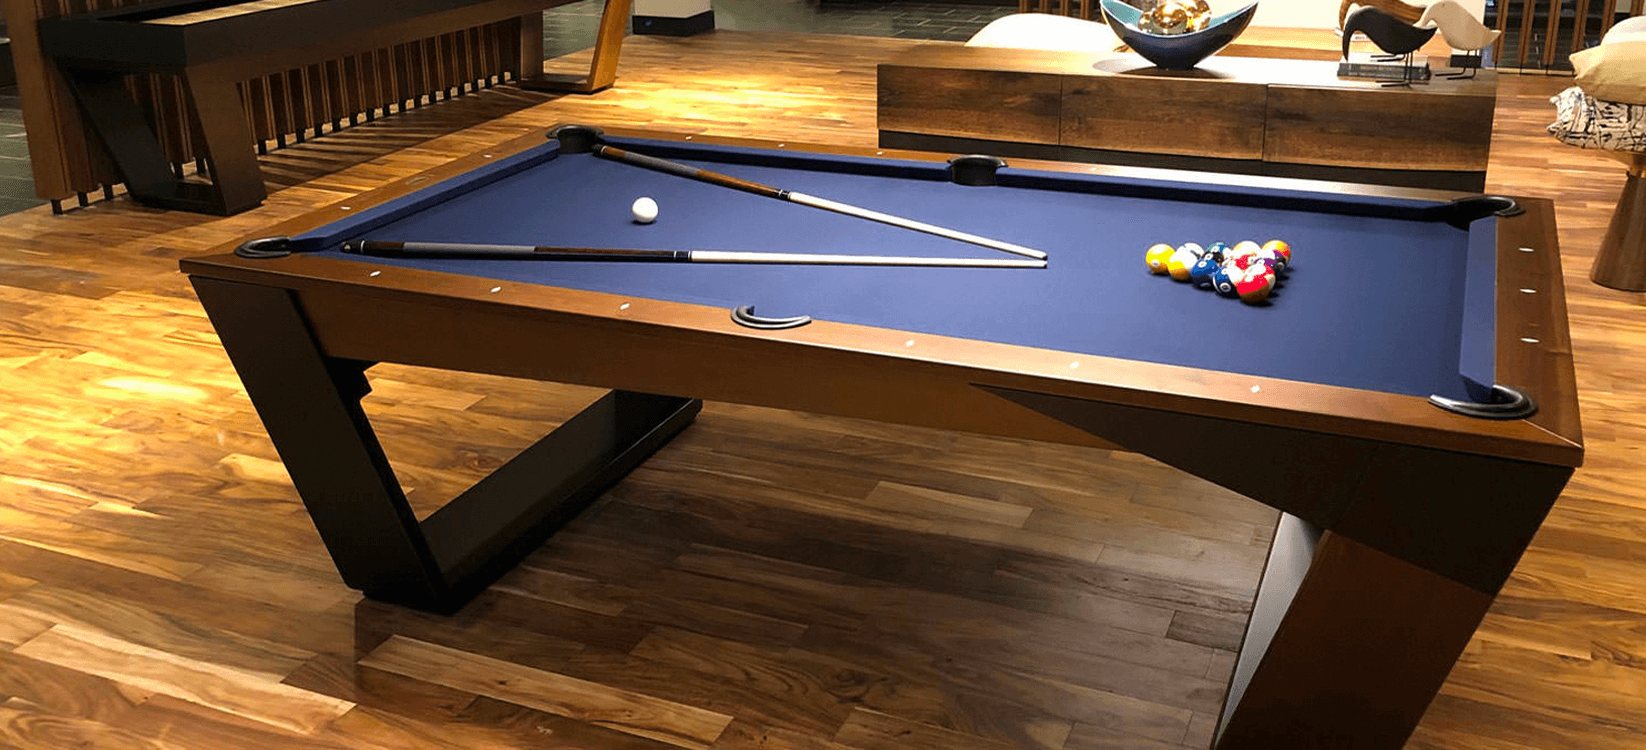 luxury pool table design